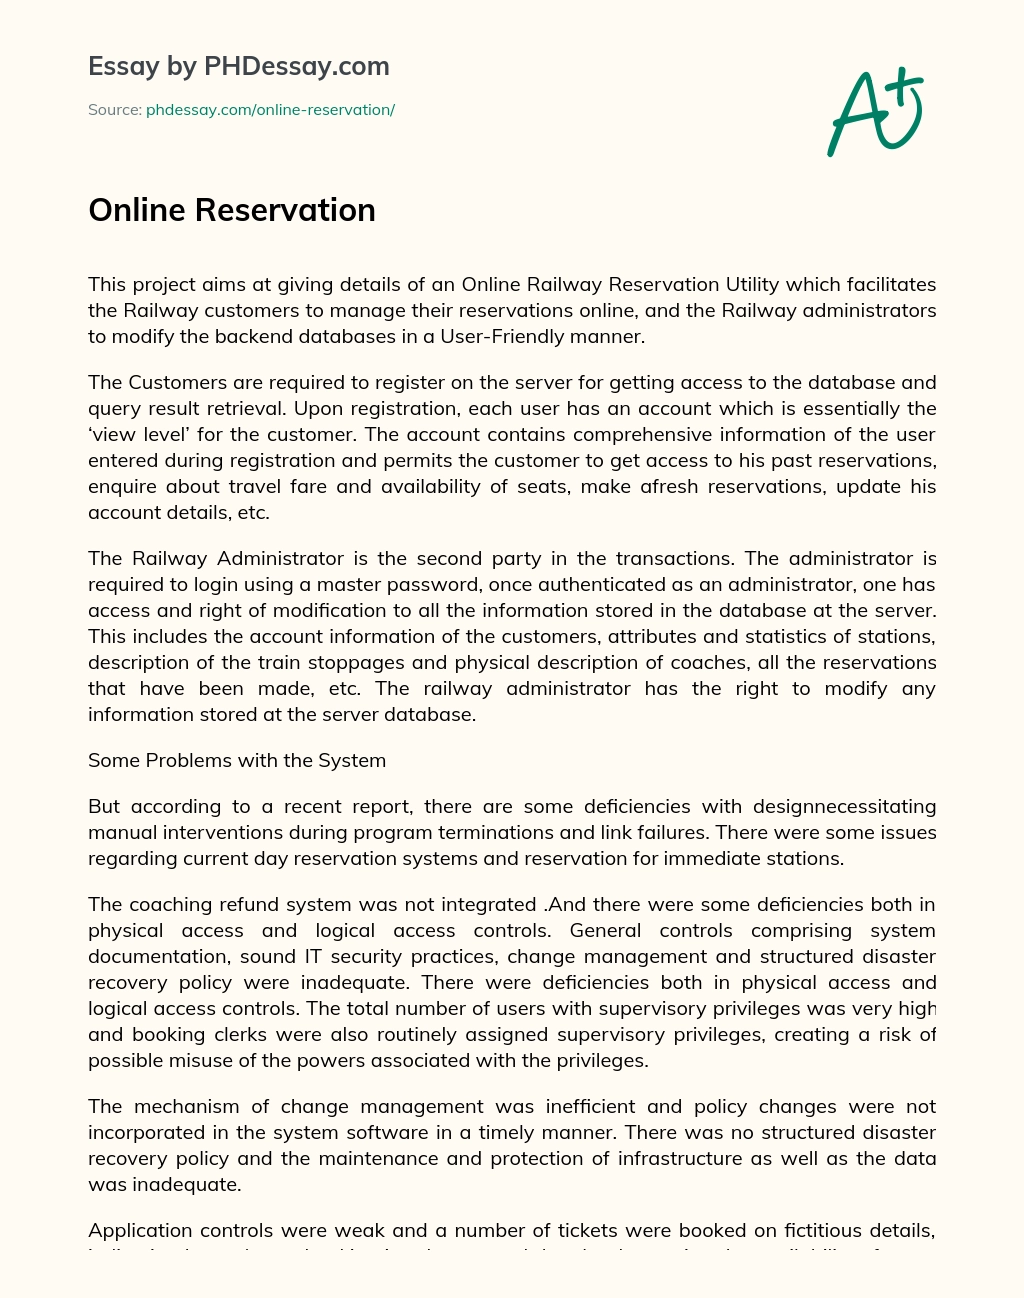 Online Reservation essay